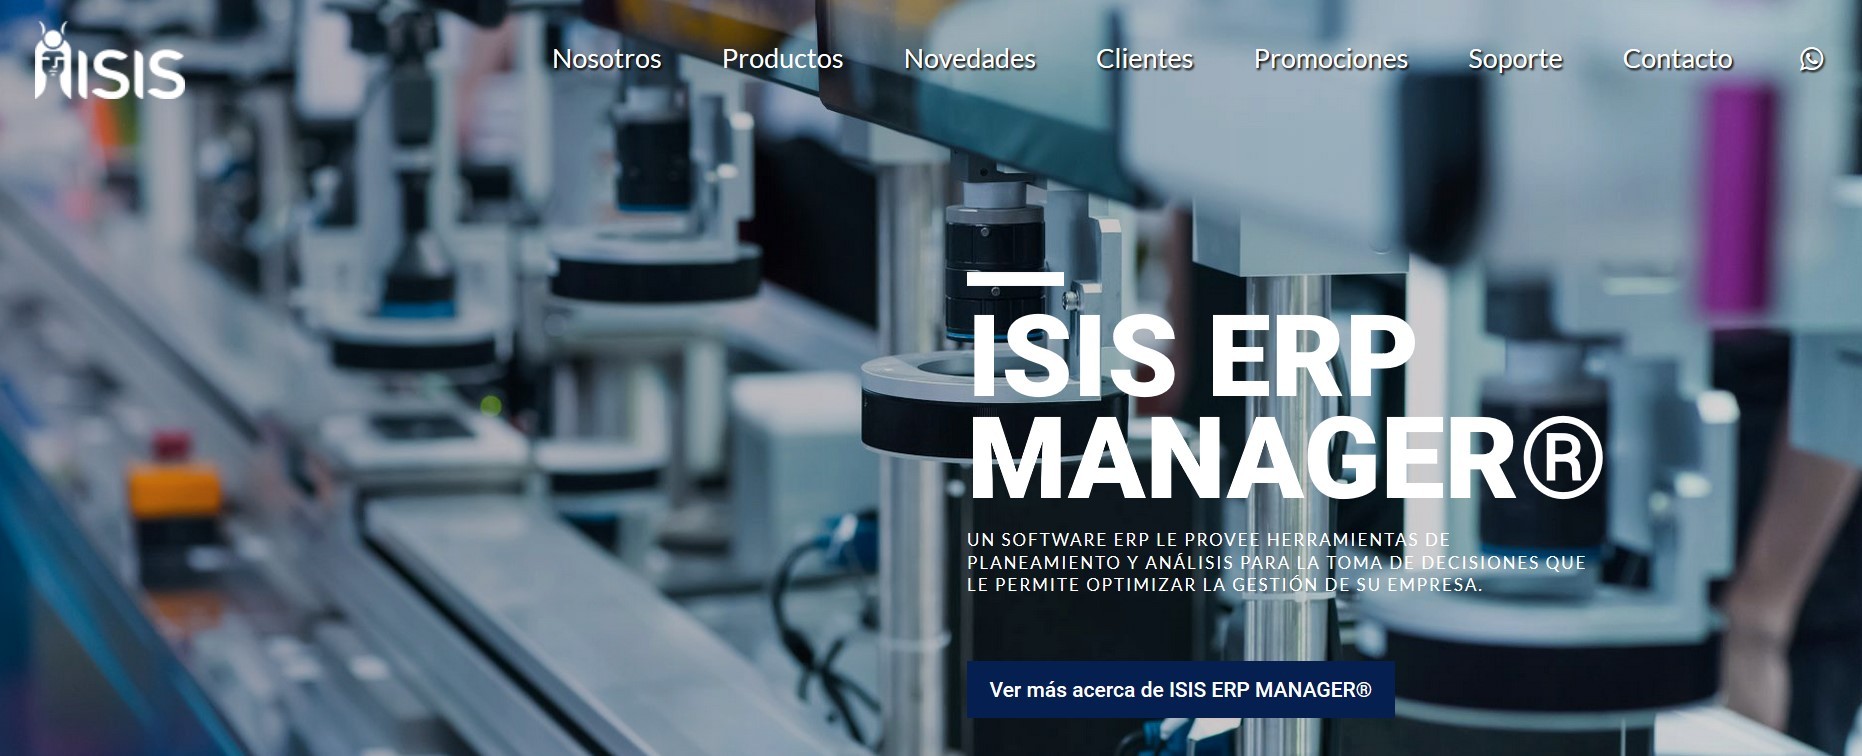 Integración TornadoStore eCommerce con Sistema de Gestión ISIS ERP